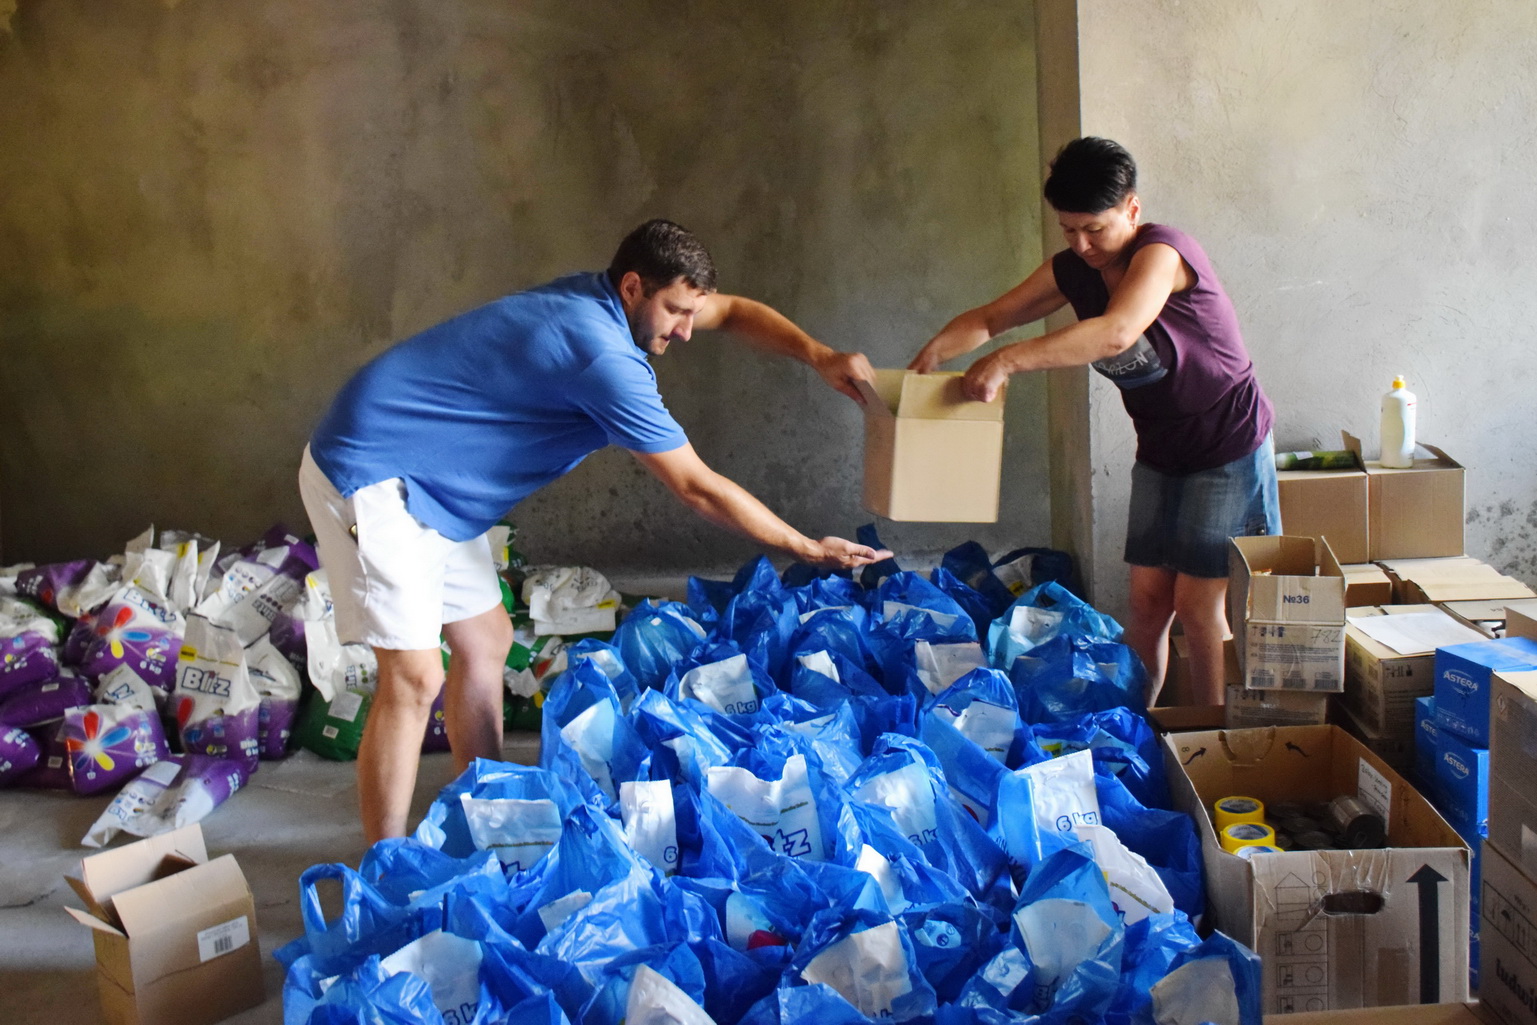 Wolontariusze przygotowują paczki z artykułami spożywczymi oraz środkami higieny